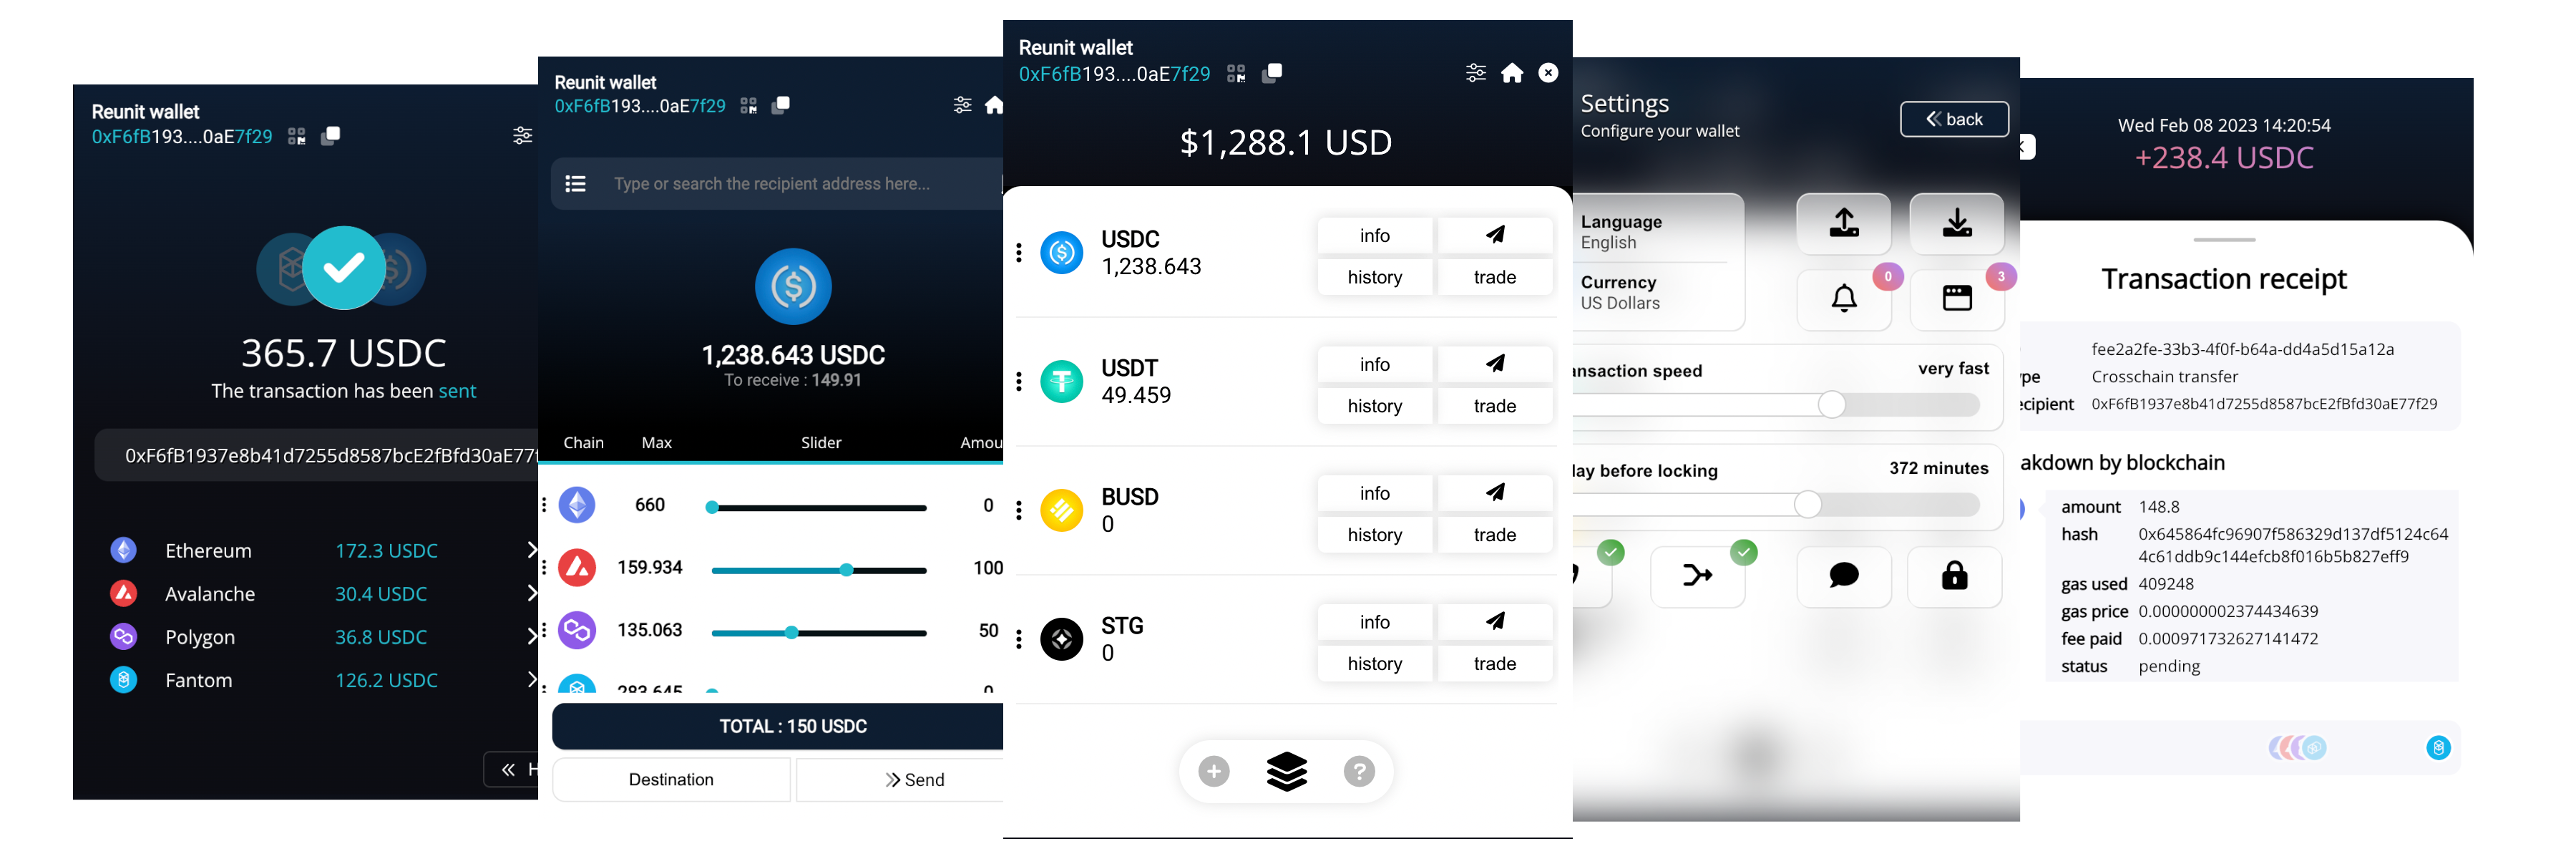 Reunit Wallet interface